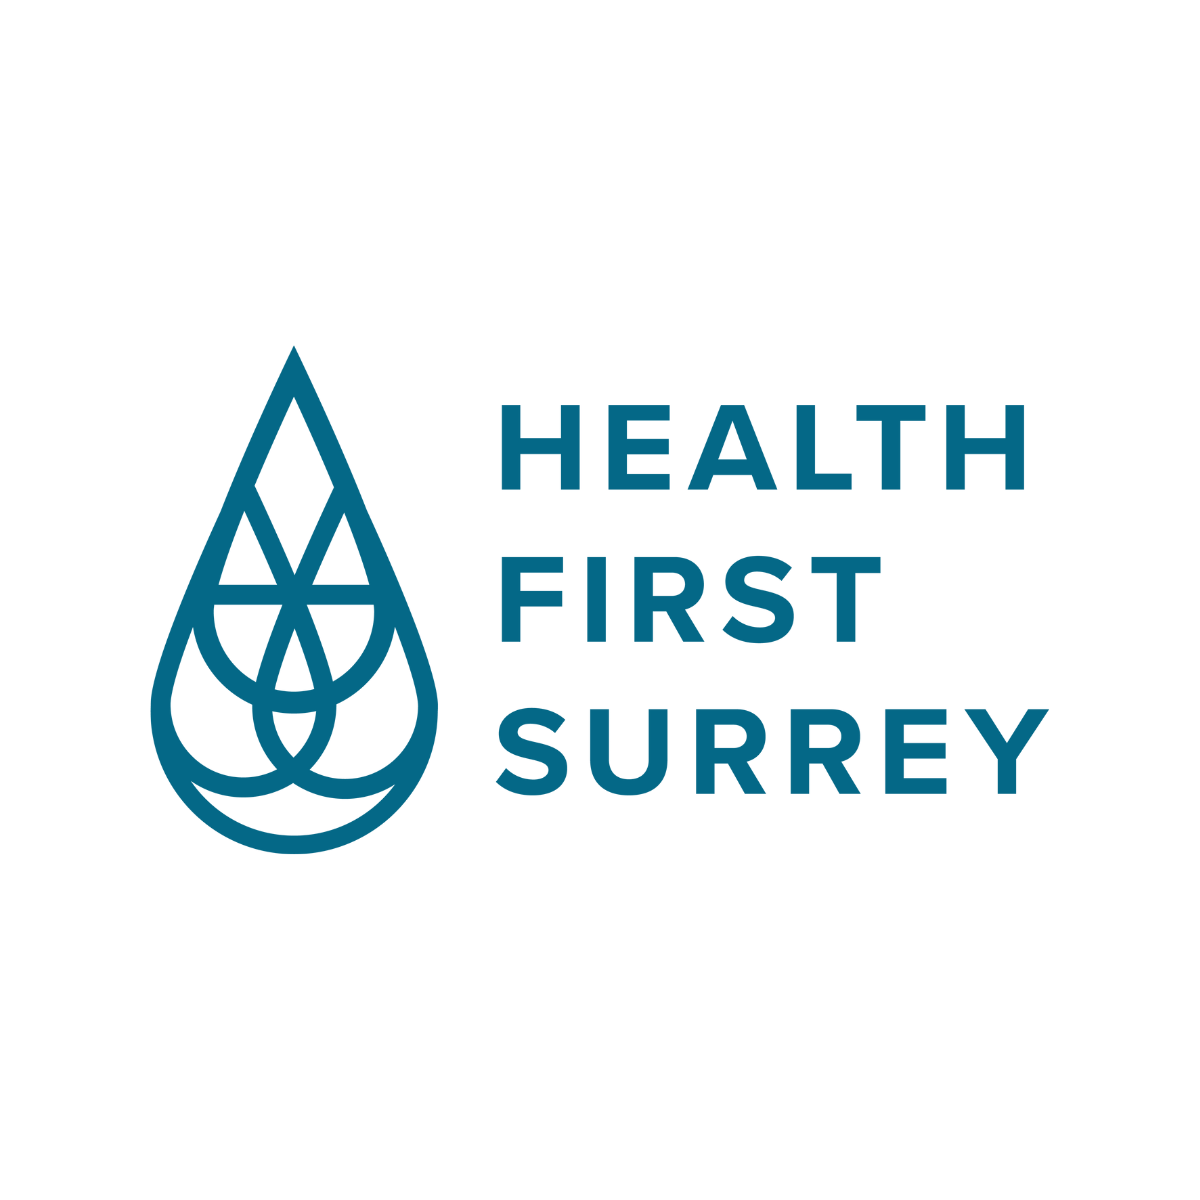 Health First Surrey